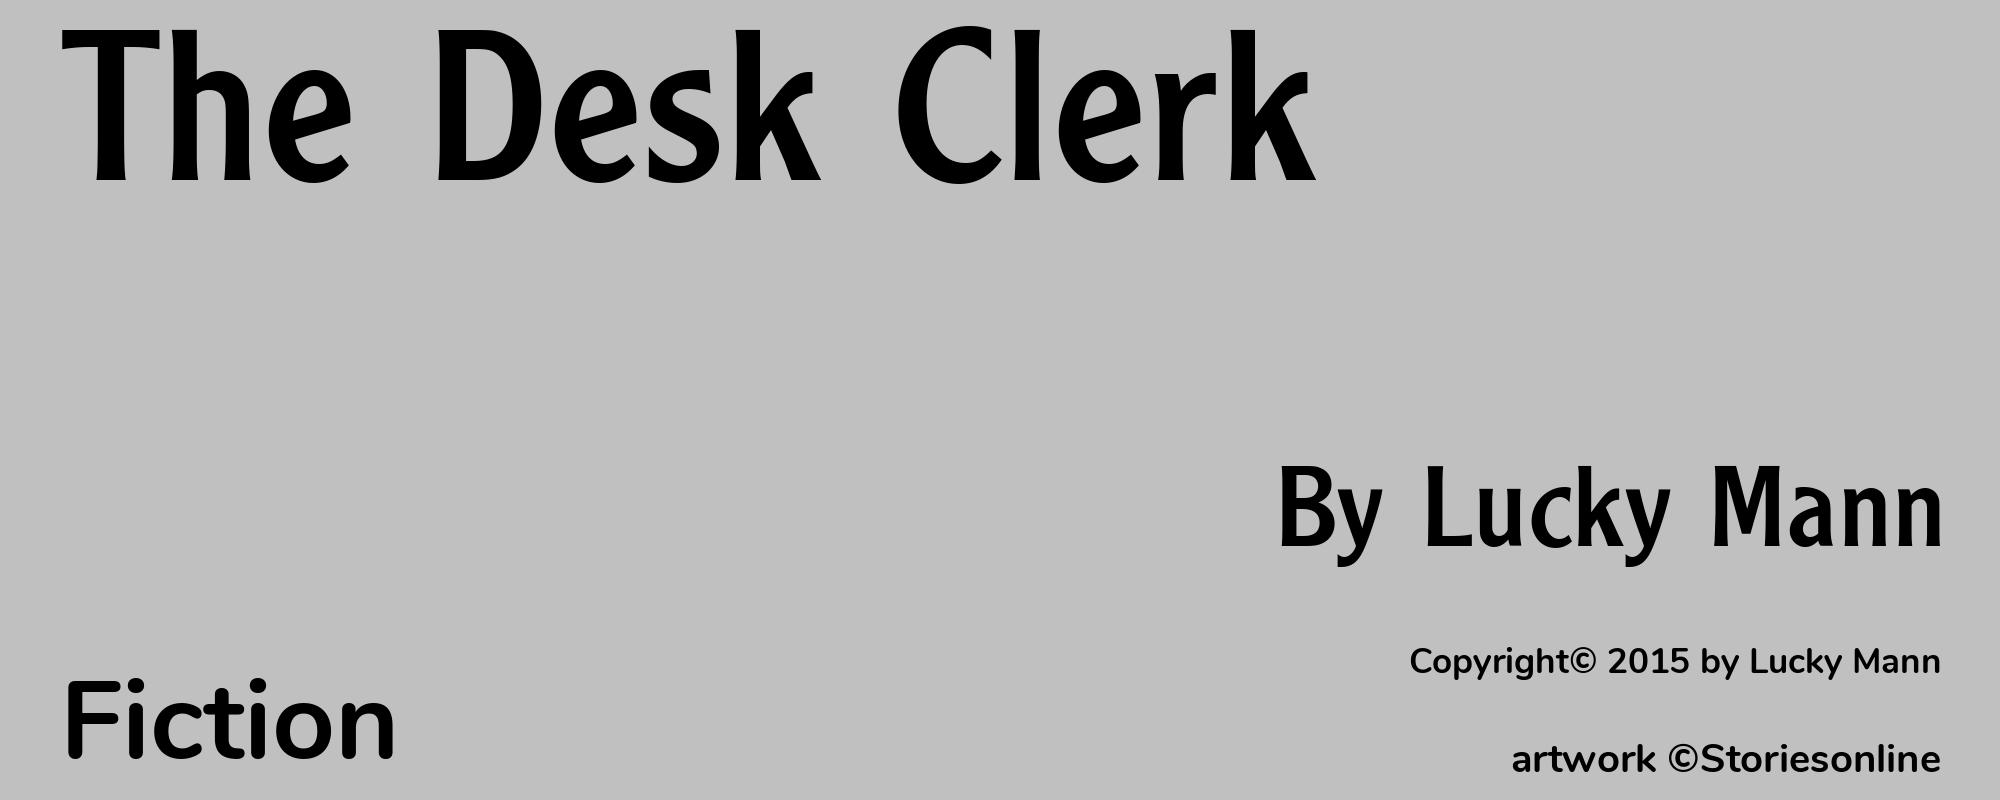 The Desk Clerk - Cover